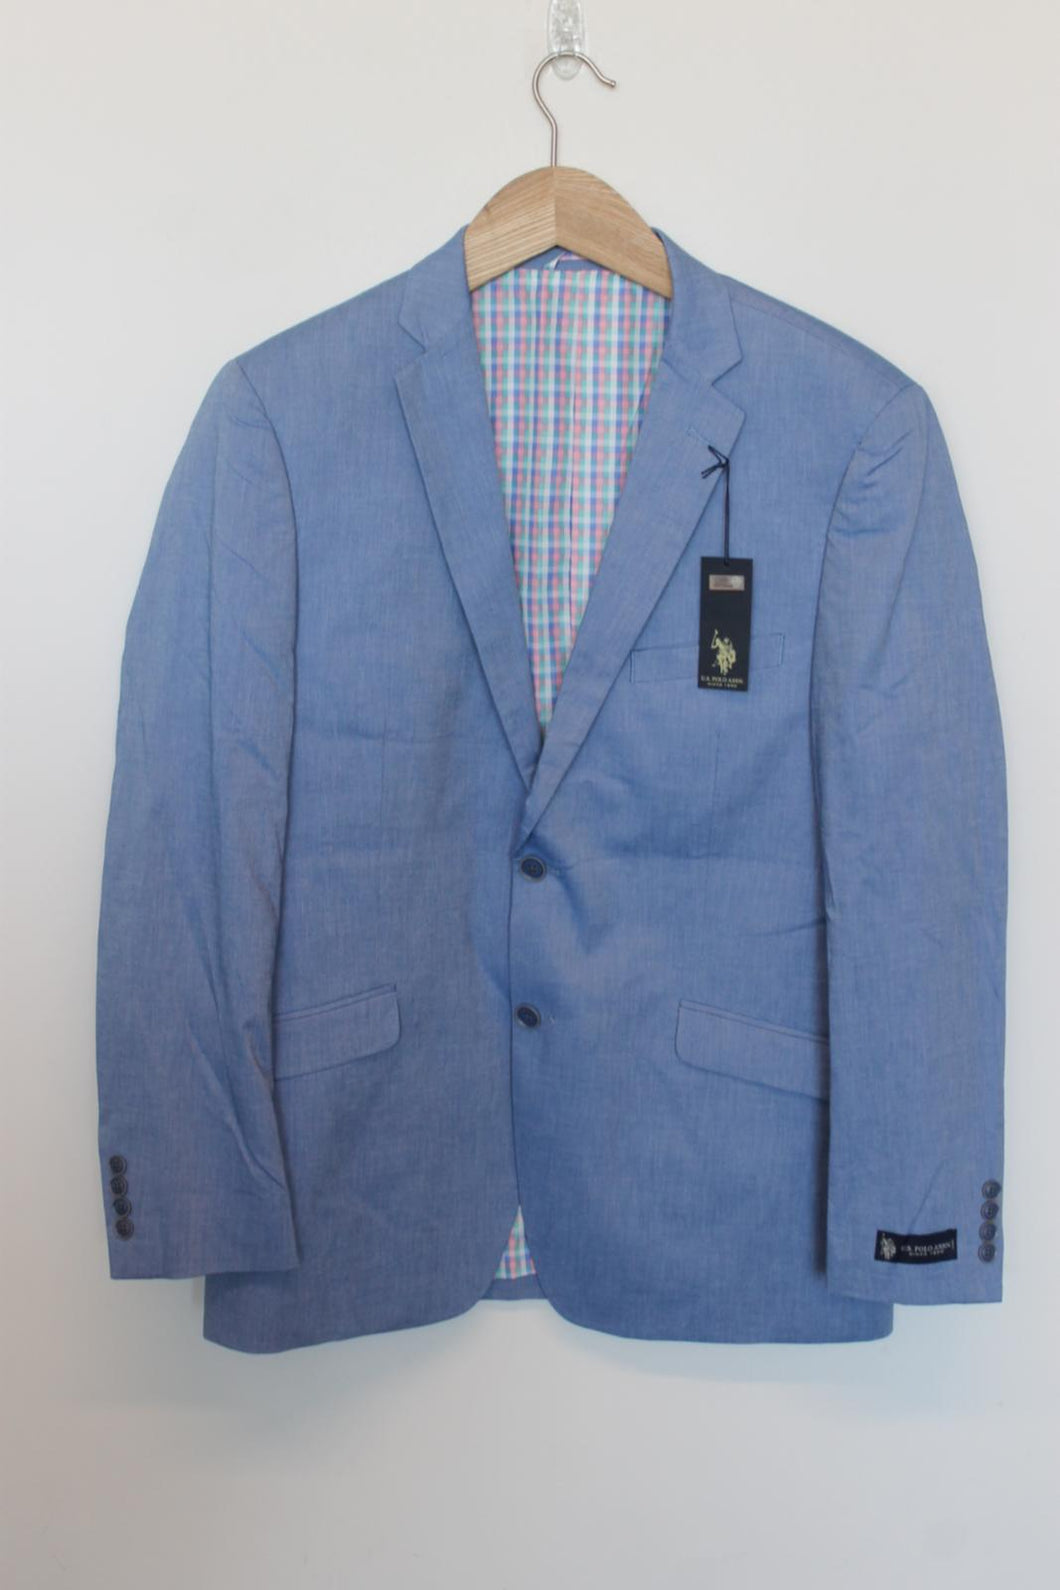 U.S. POLO ASSN. Menâs Blue Cotton Ram Sports Jacket Blazer Size 42R BNWT